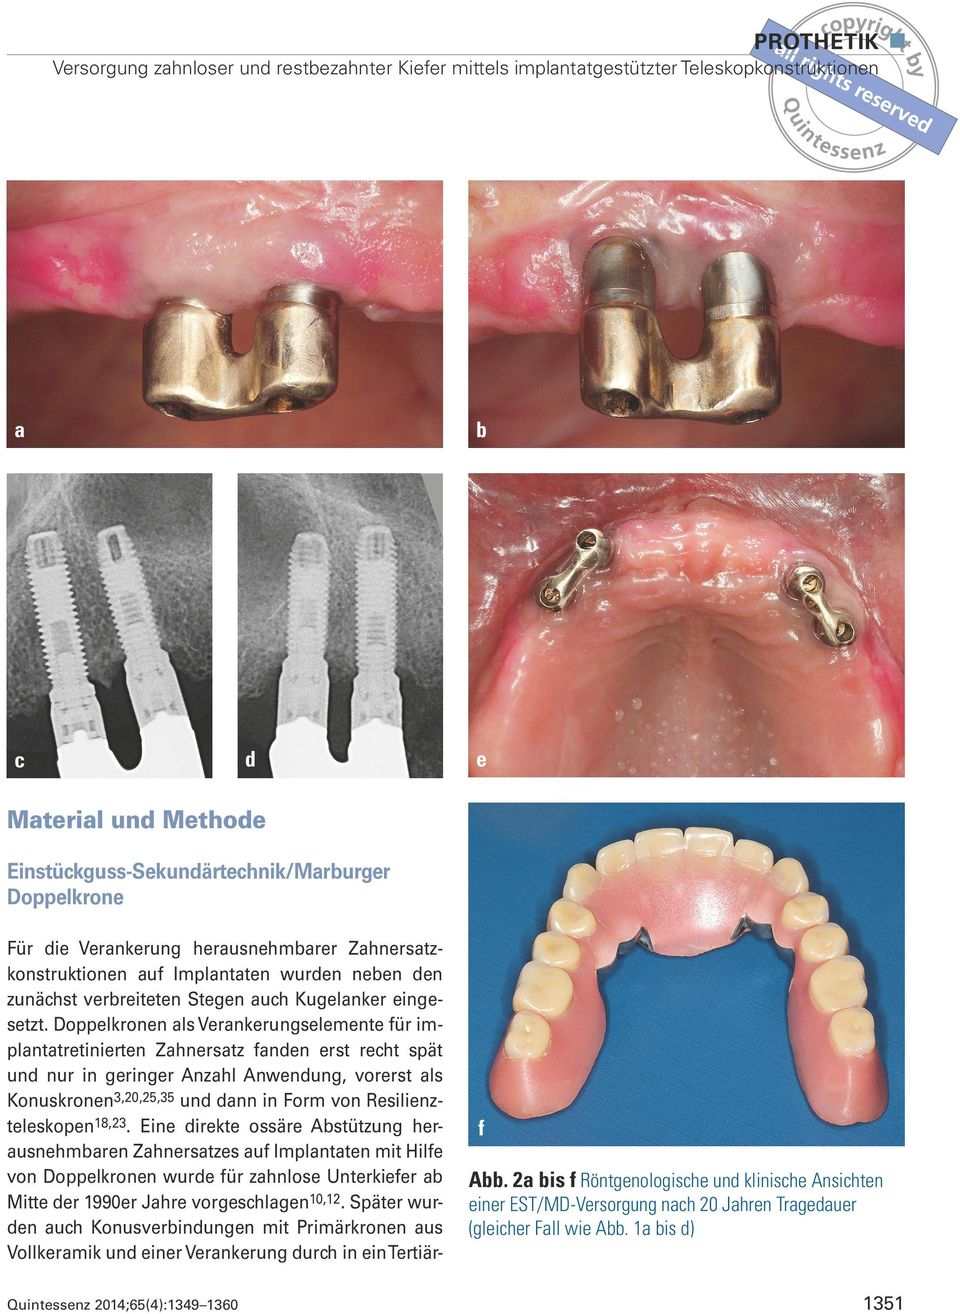 Doppelkronen als Verankerungselemente für implantatretinierten Zahnersatz fanden erst recht spät und nur in geringer Anzahl Anwendung, vorerst als Konuskronen3,20,25,35 und dann in Form von